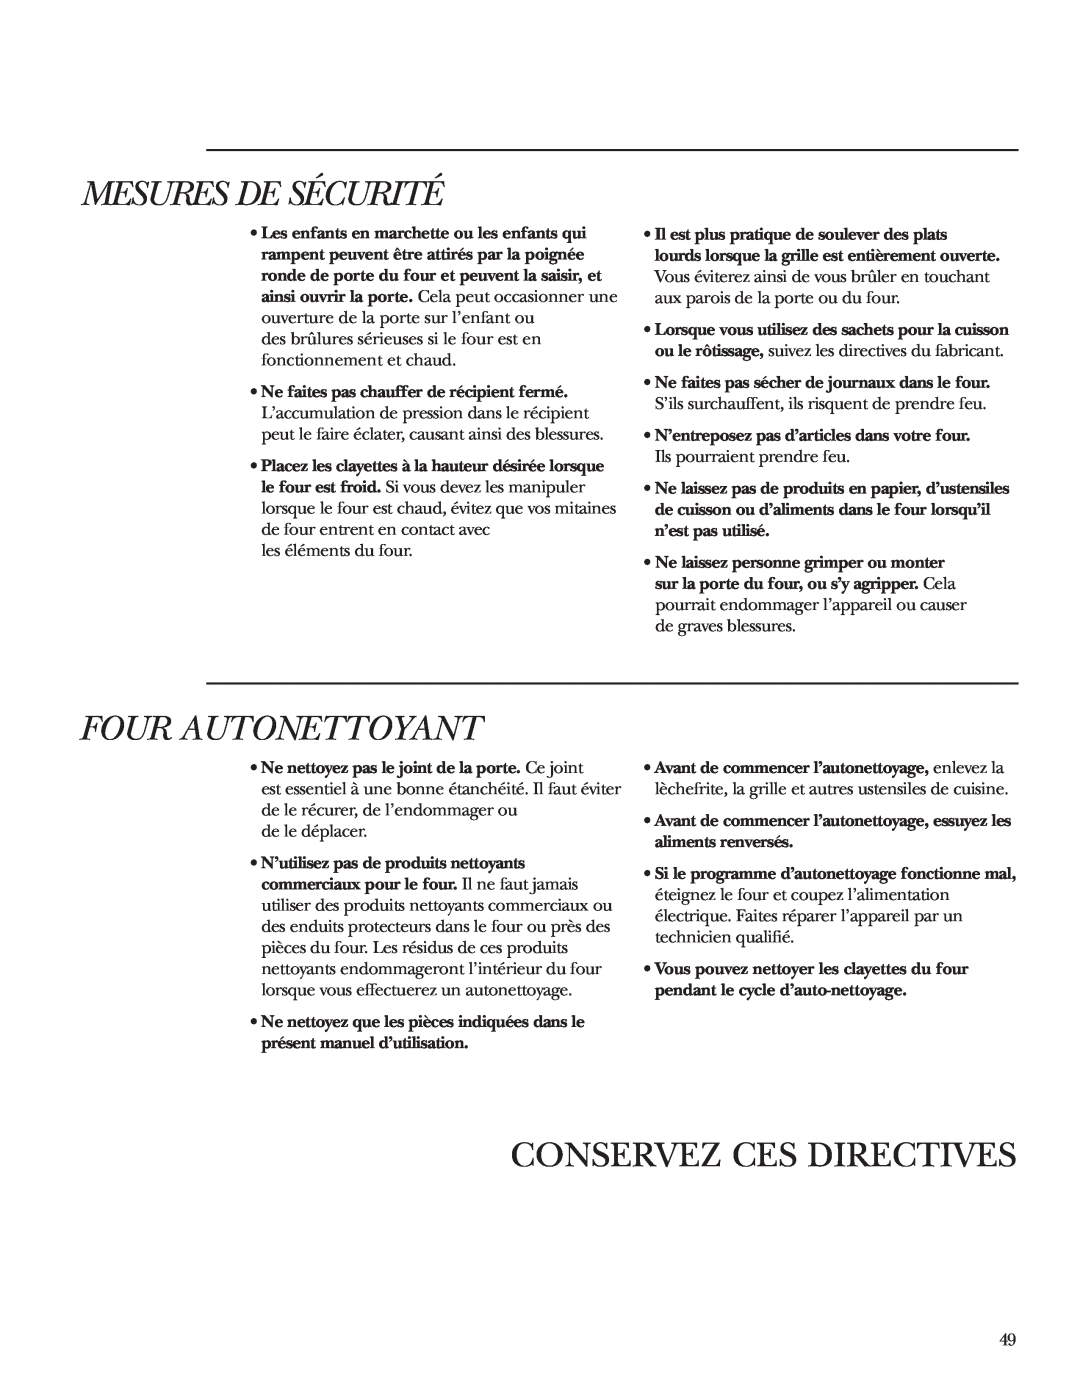 GE ZET1S, ZET2S, ZET2P, ZET1P owner manual Four Autonettoyant, Conservez Ces Directives, Mesures De Sécurité 